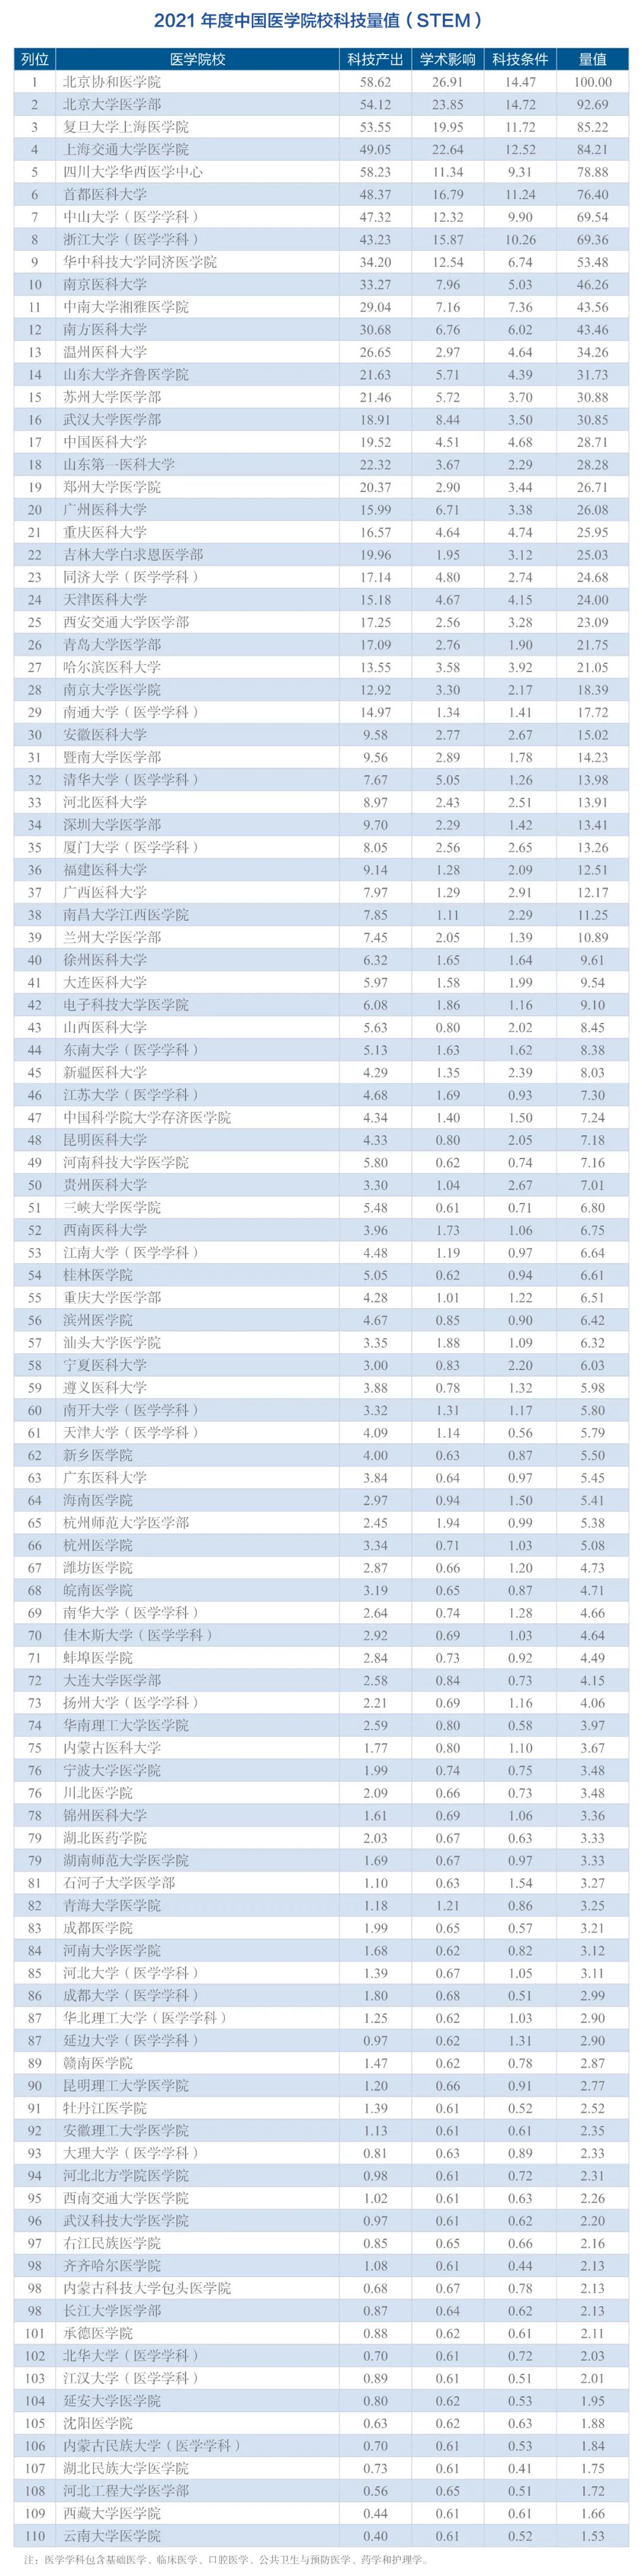 2021年度中国医学院校/中国医院科技量值（STEM）